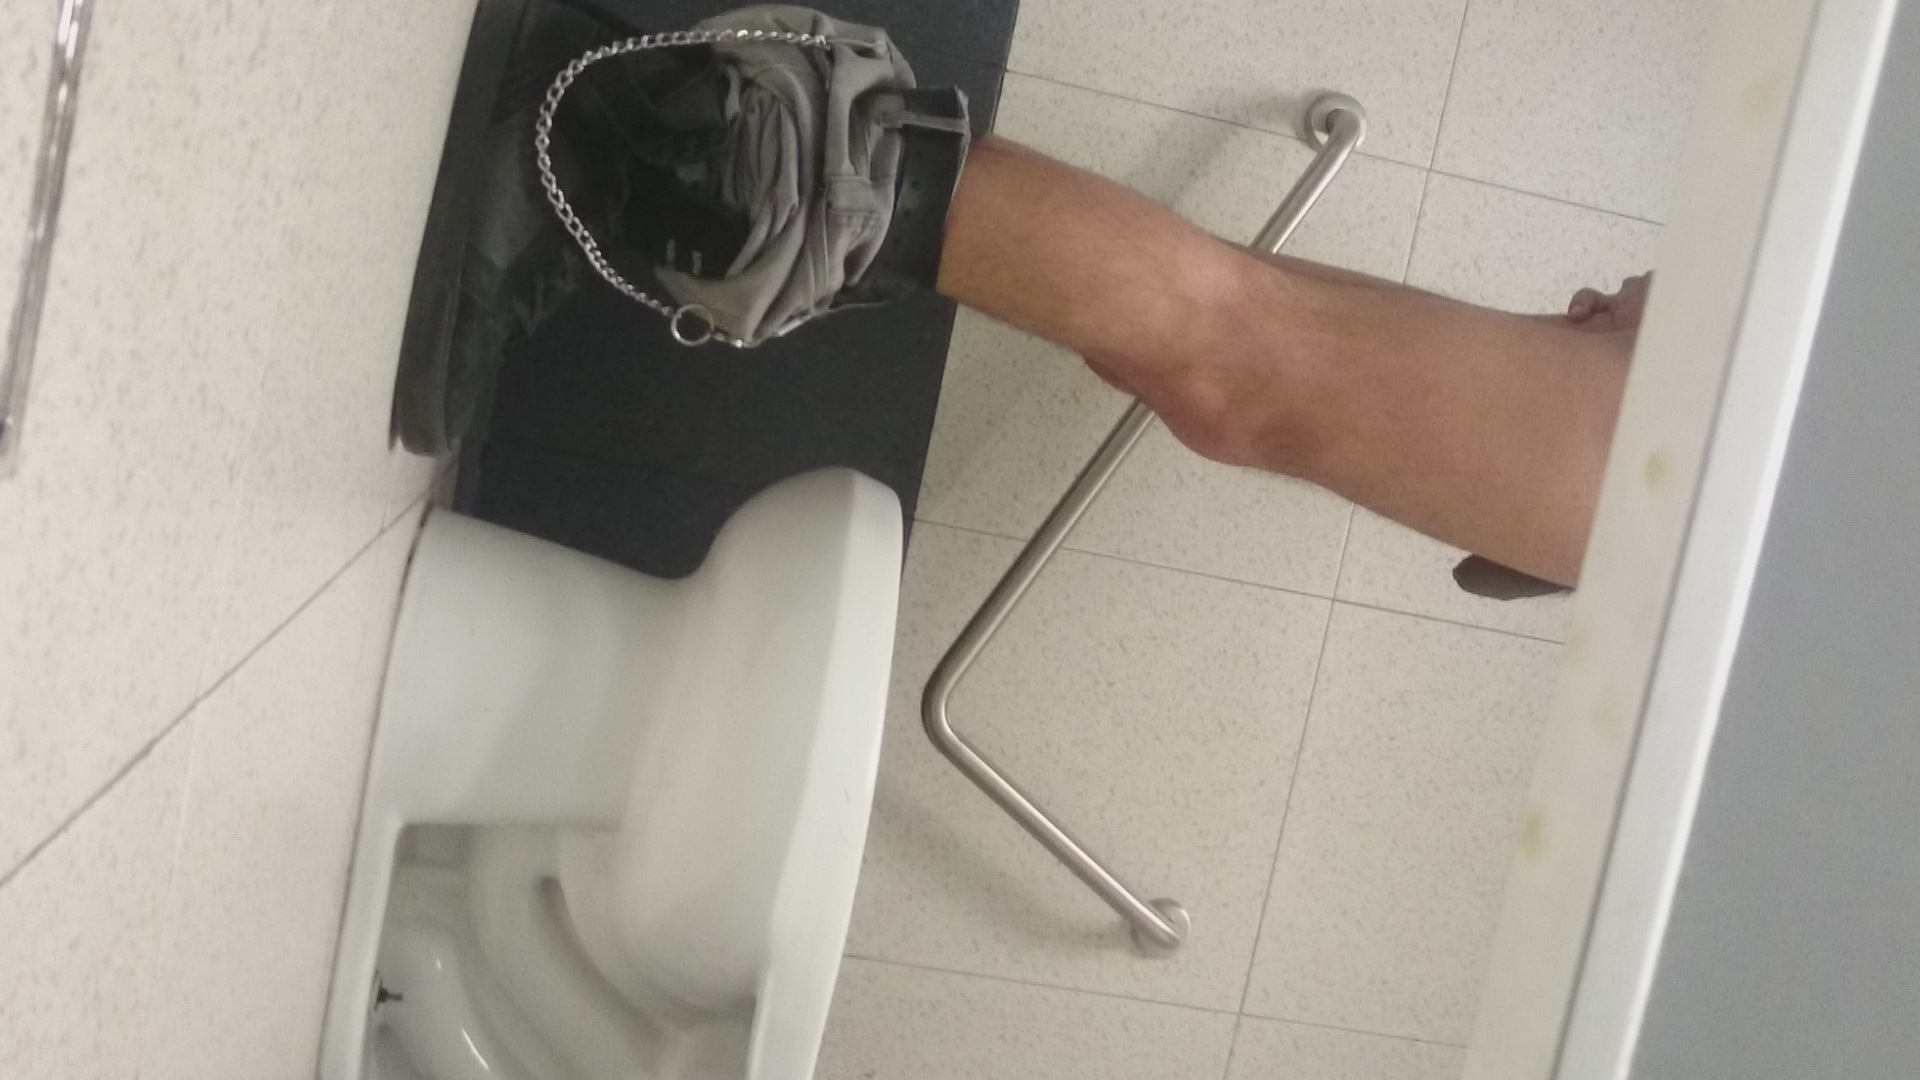 spycam in toilete-guy str8,  at work